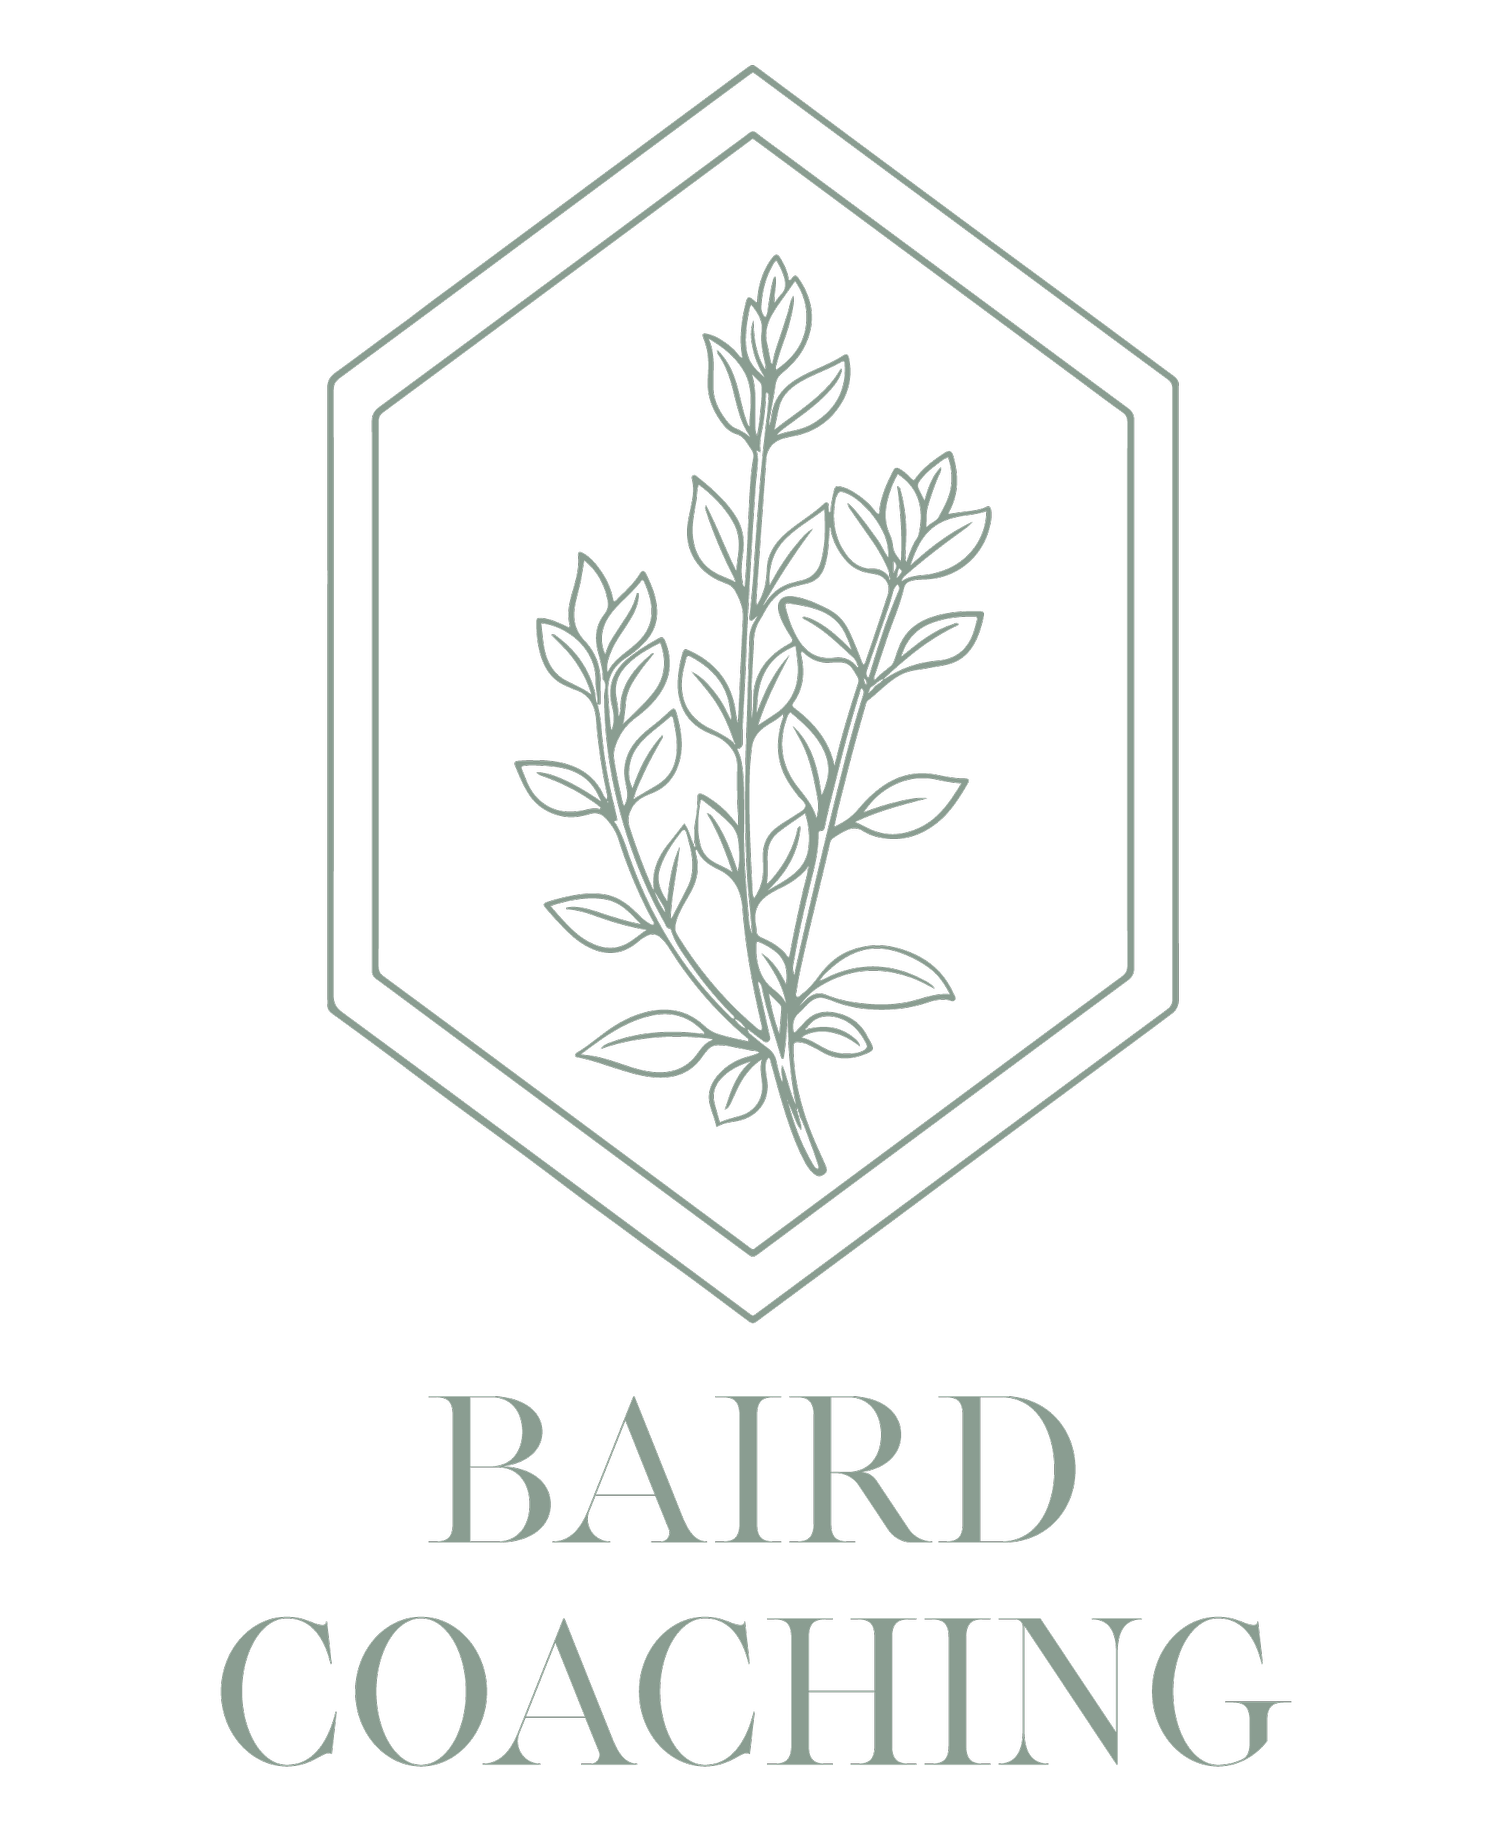 Baird Coaching